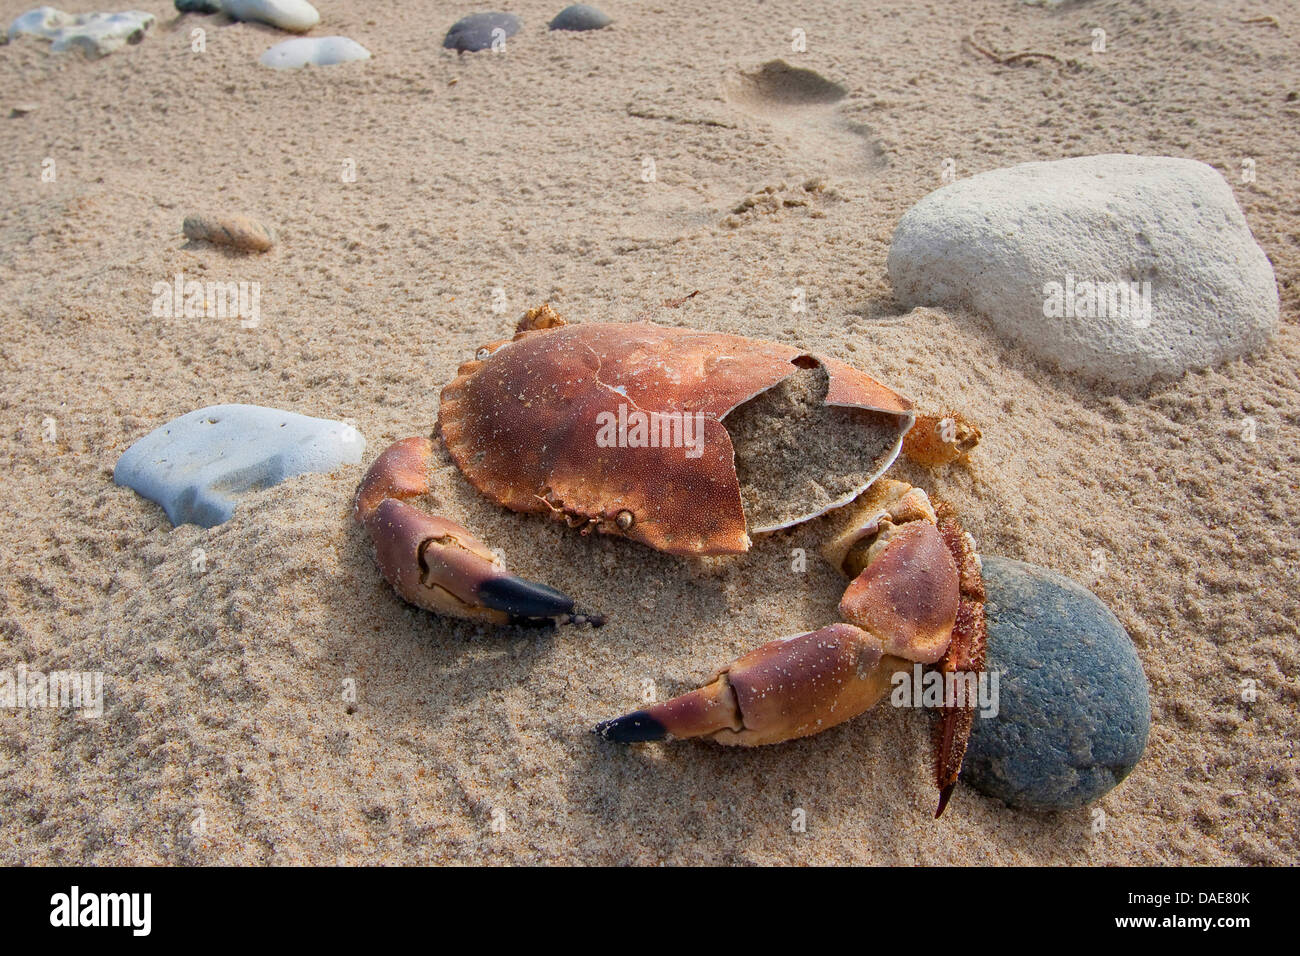 Crabe européen (Cancer pagurus), coquille d'un crabe mort à la plage de sable fin, Allemagne Banque D'Images